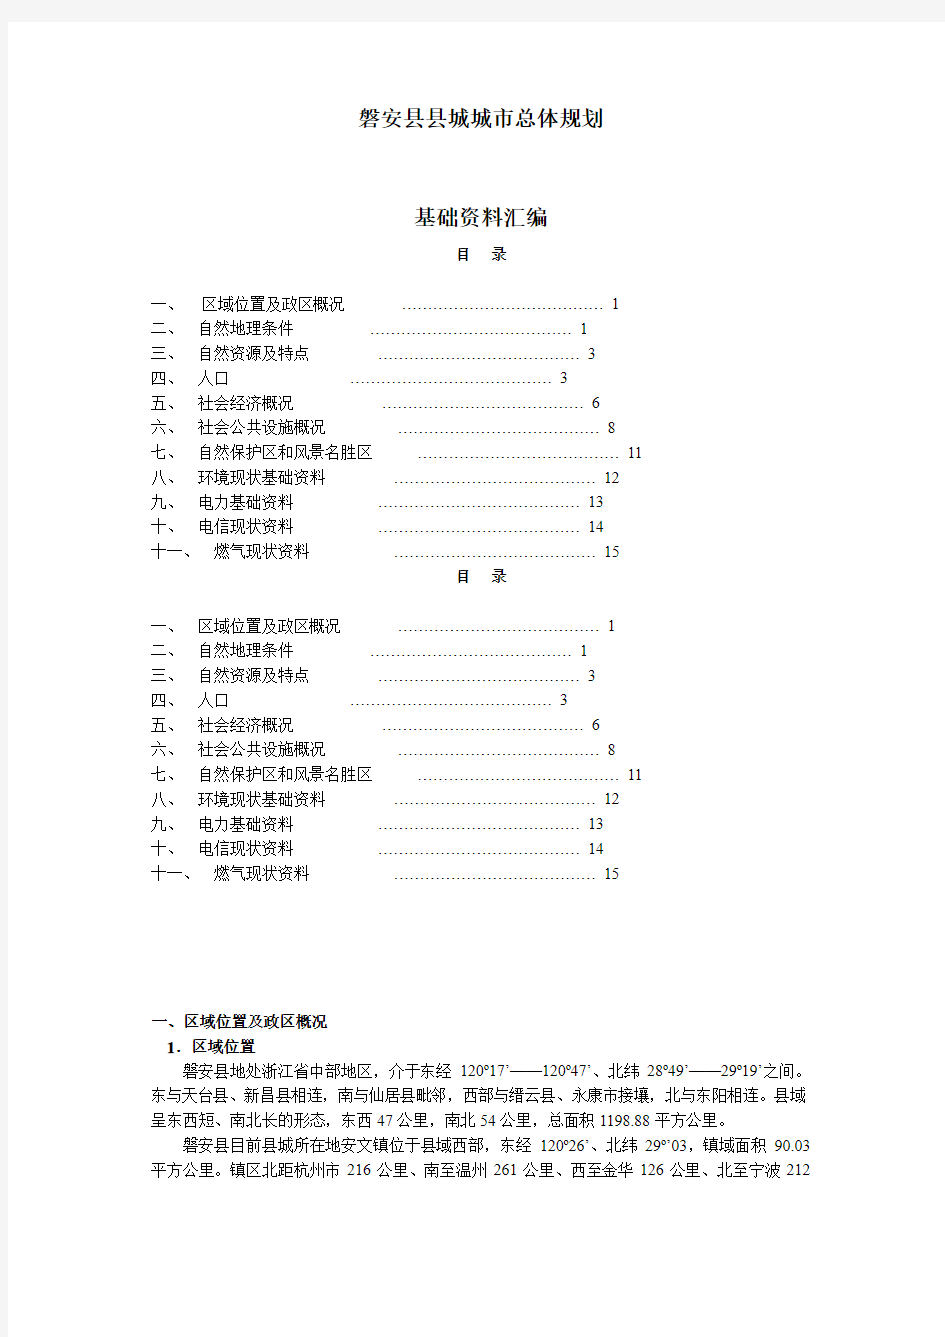 磐安县县城城市总体规划2213